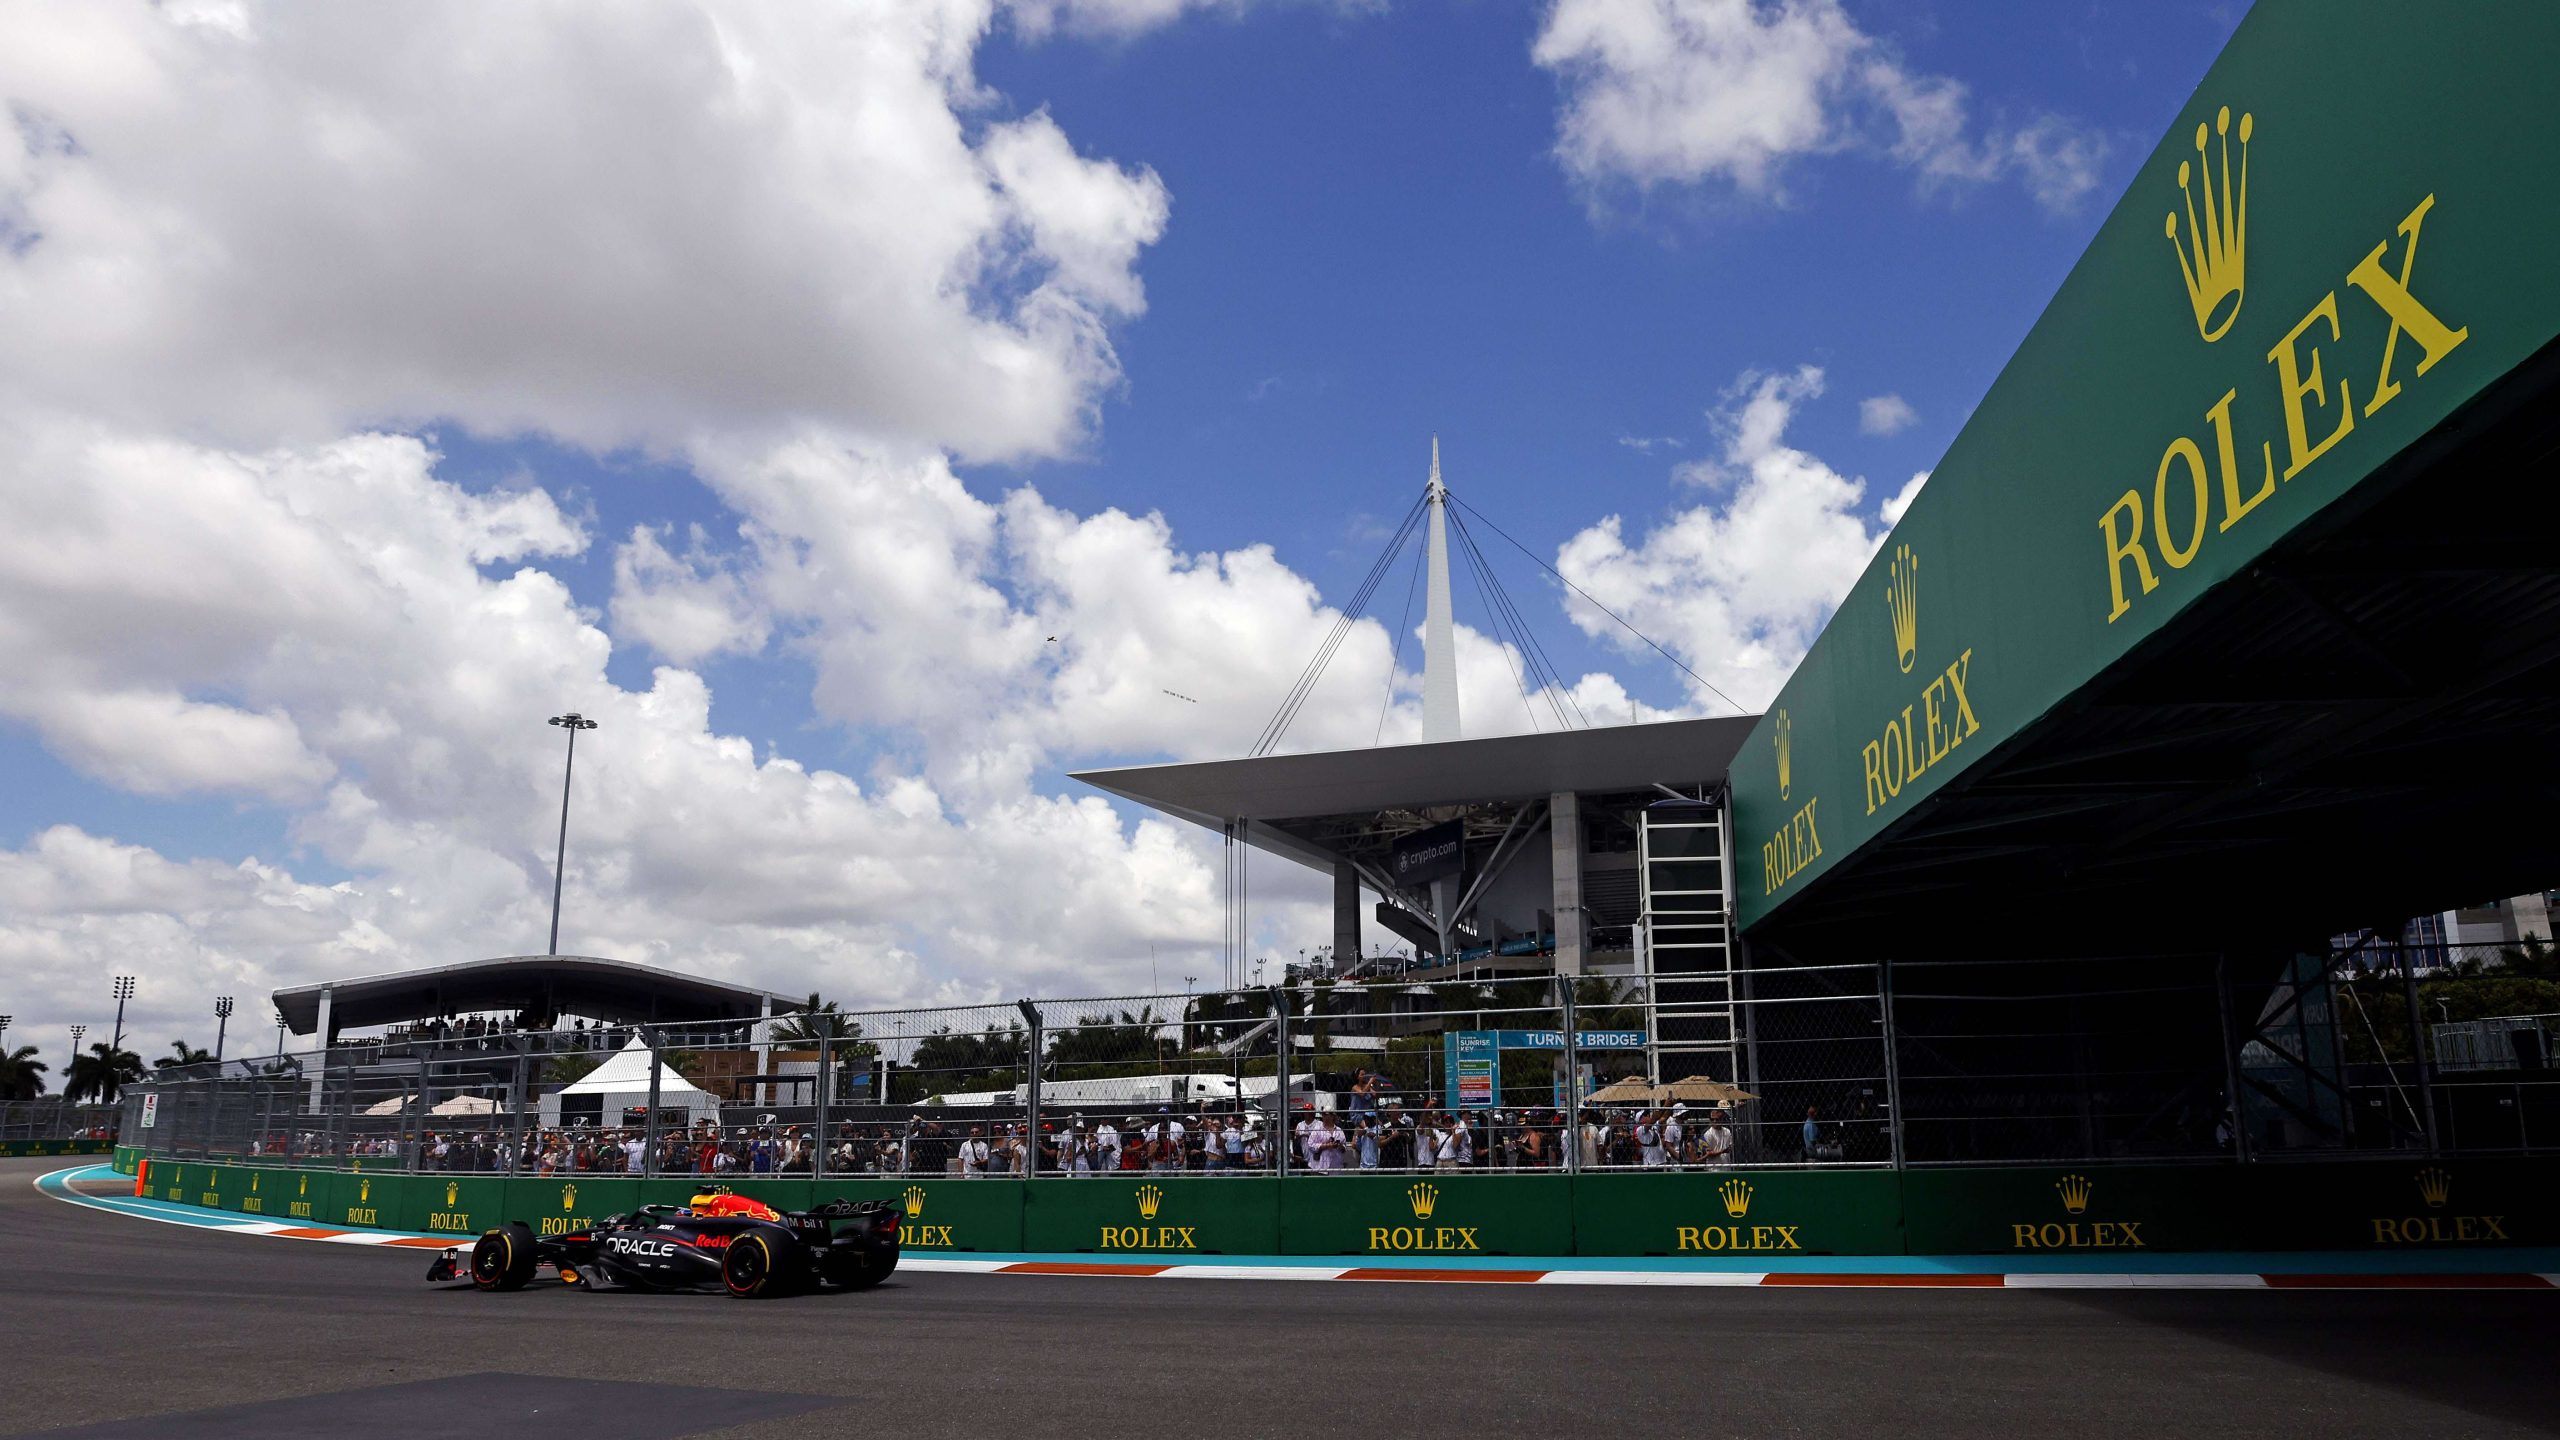 Miami Grand Prix Charts New Course, Ditches 2023 F1 Driver Presentations in Pre-Race Show